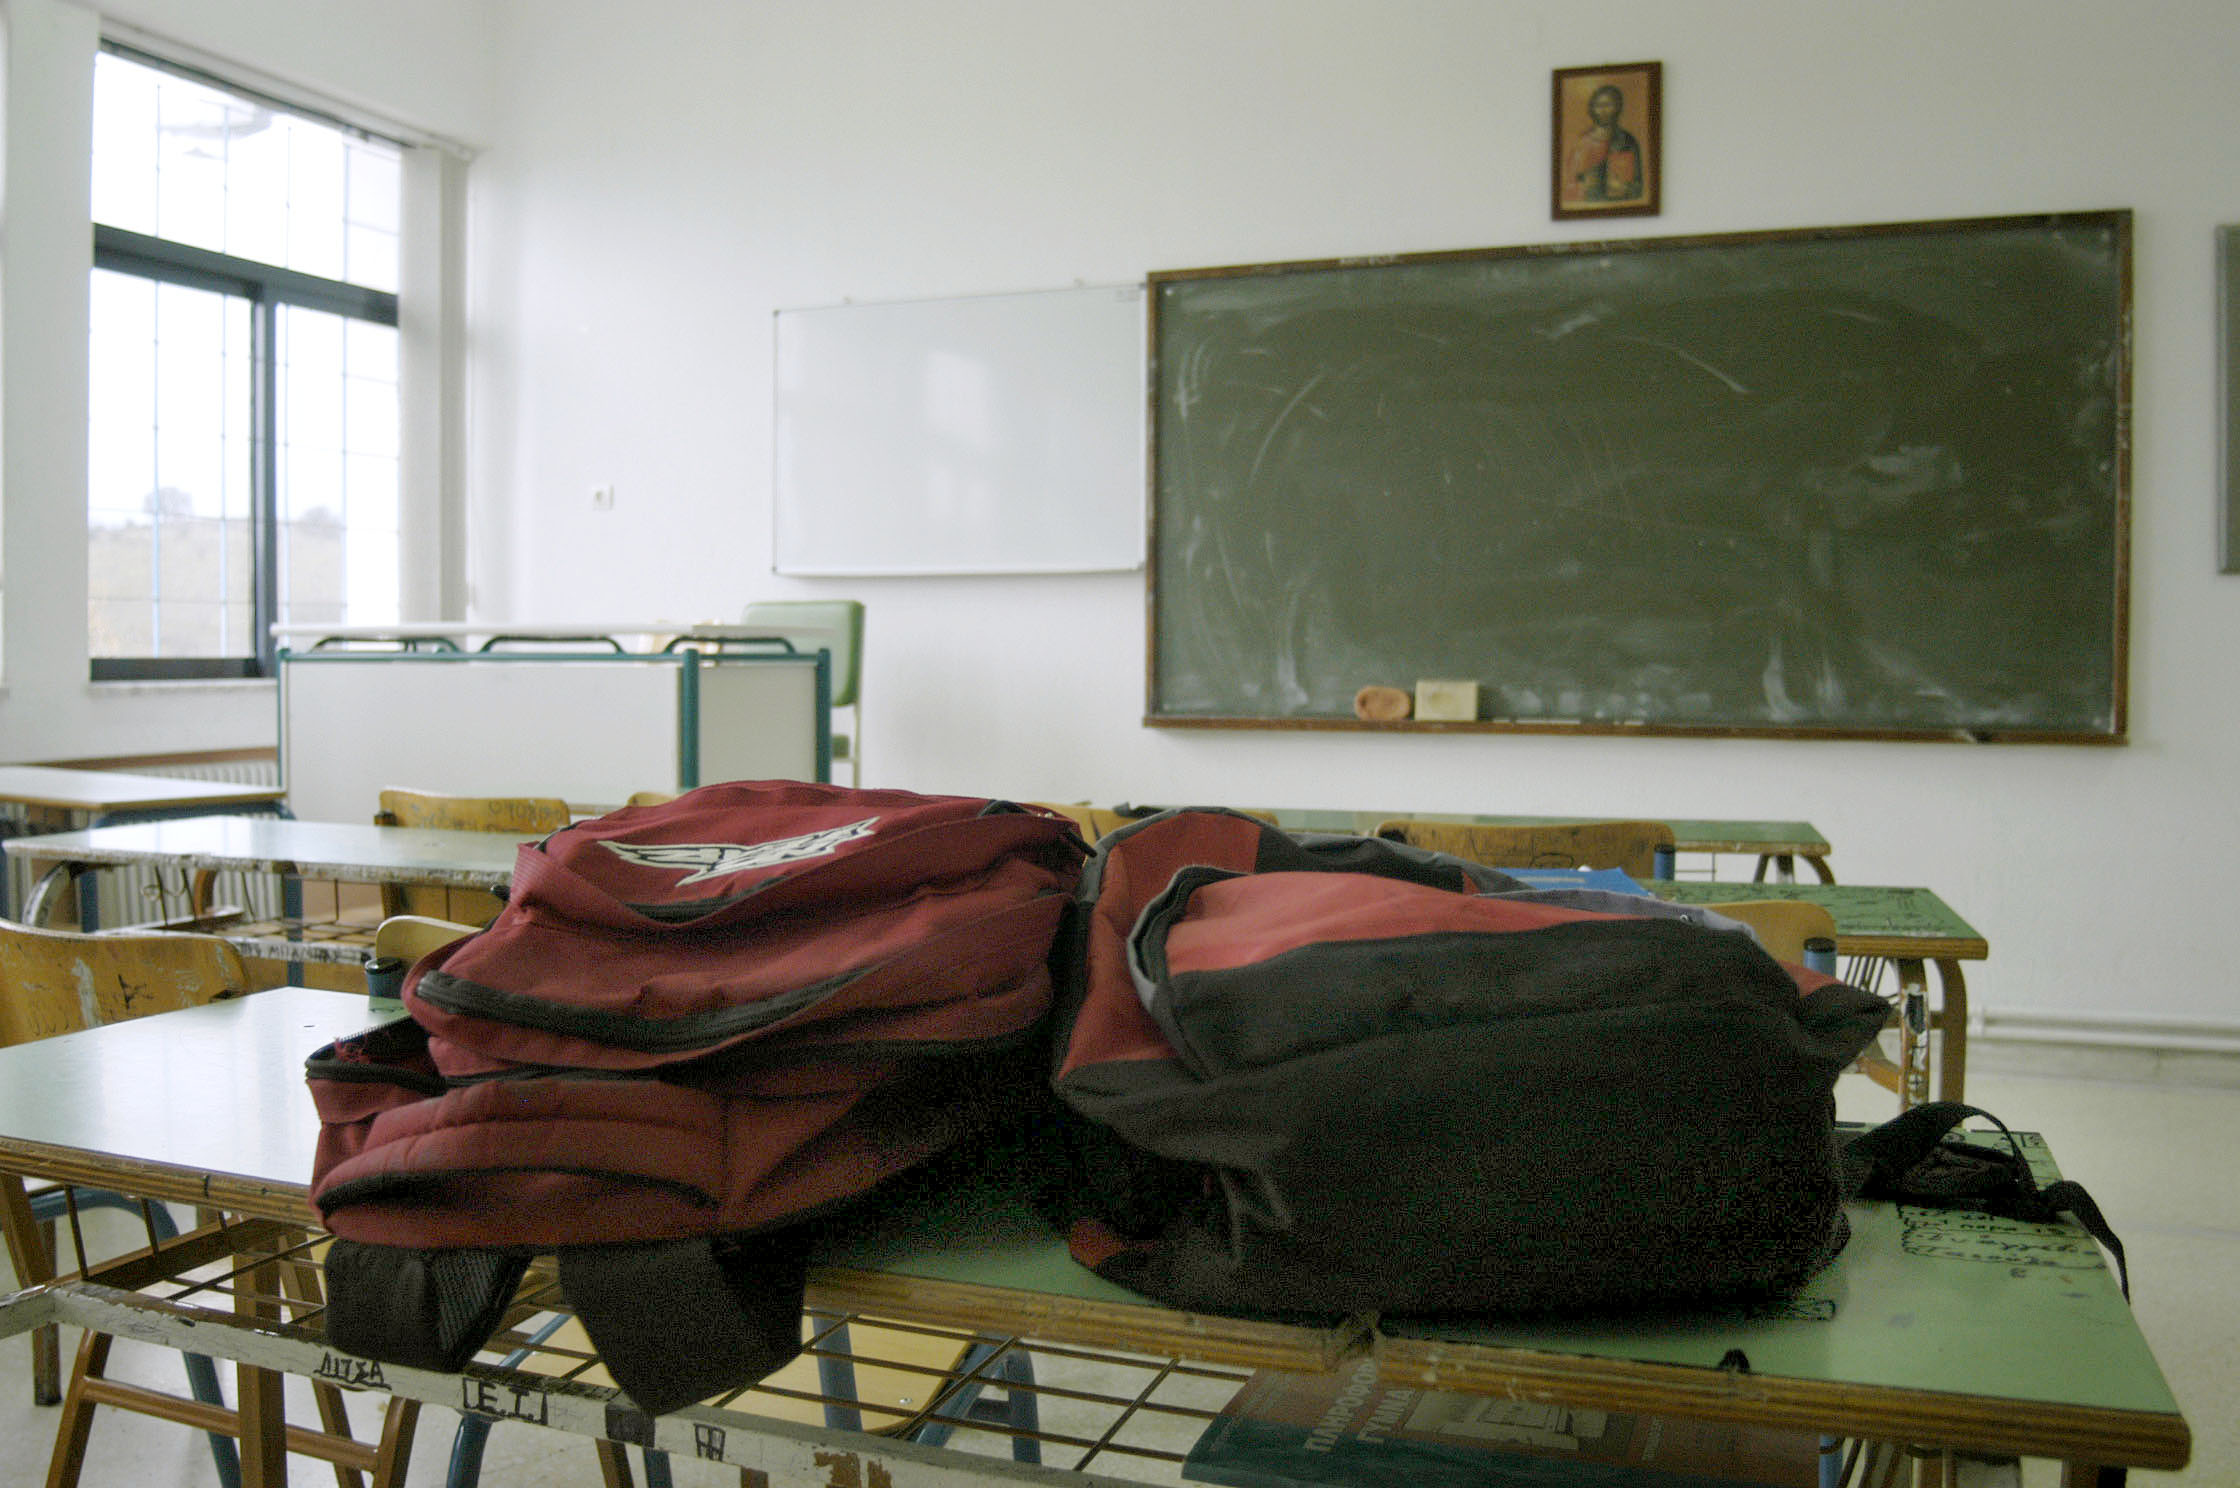 Ηράκλειο: Revenge porn σε σχολείο – Στον εισαγγελέα οι δύο μαθητές που συνελήφθησαν